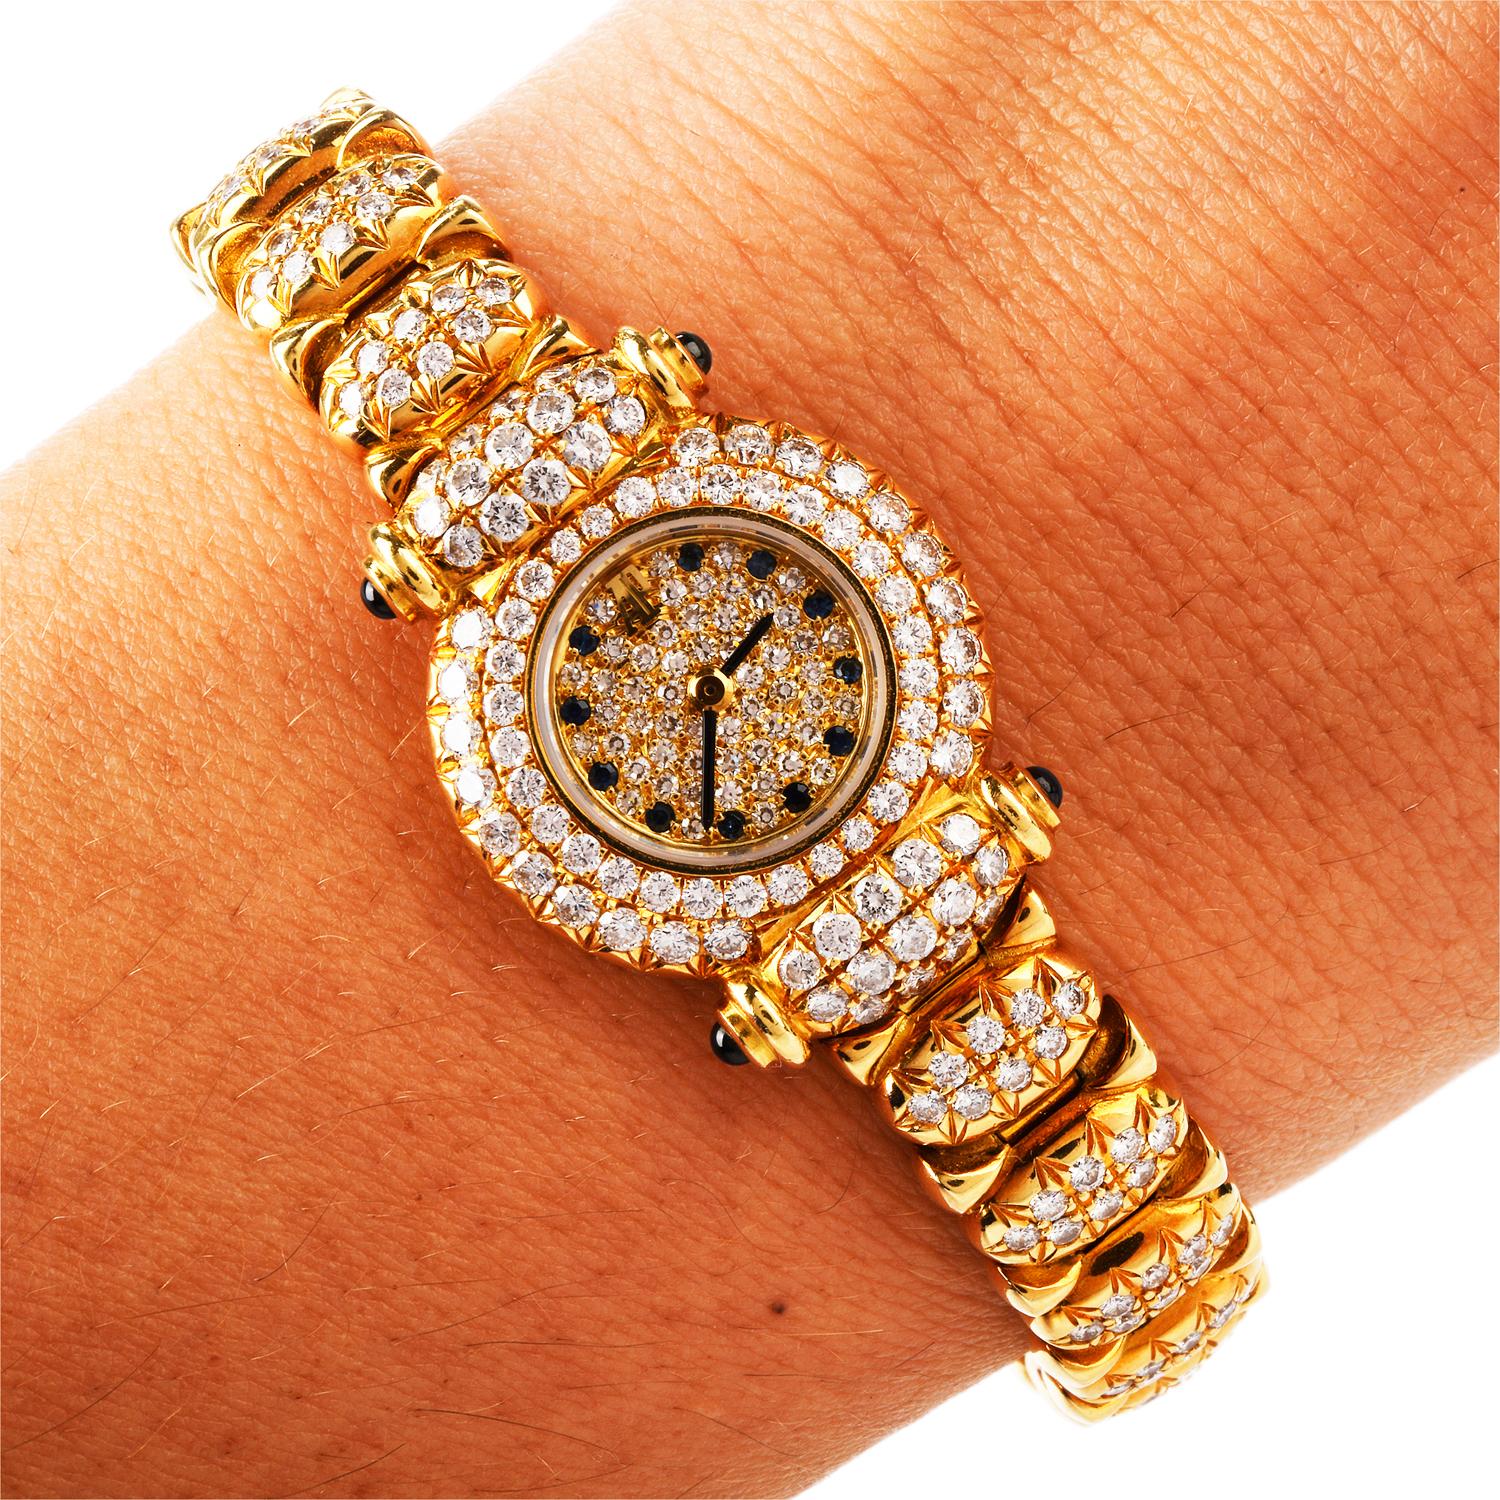 Audemars Piguet 1990s Ladies Diamonds Ref 83345 18 Karat Watch 1